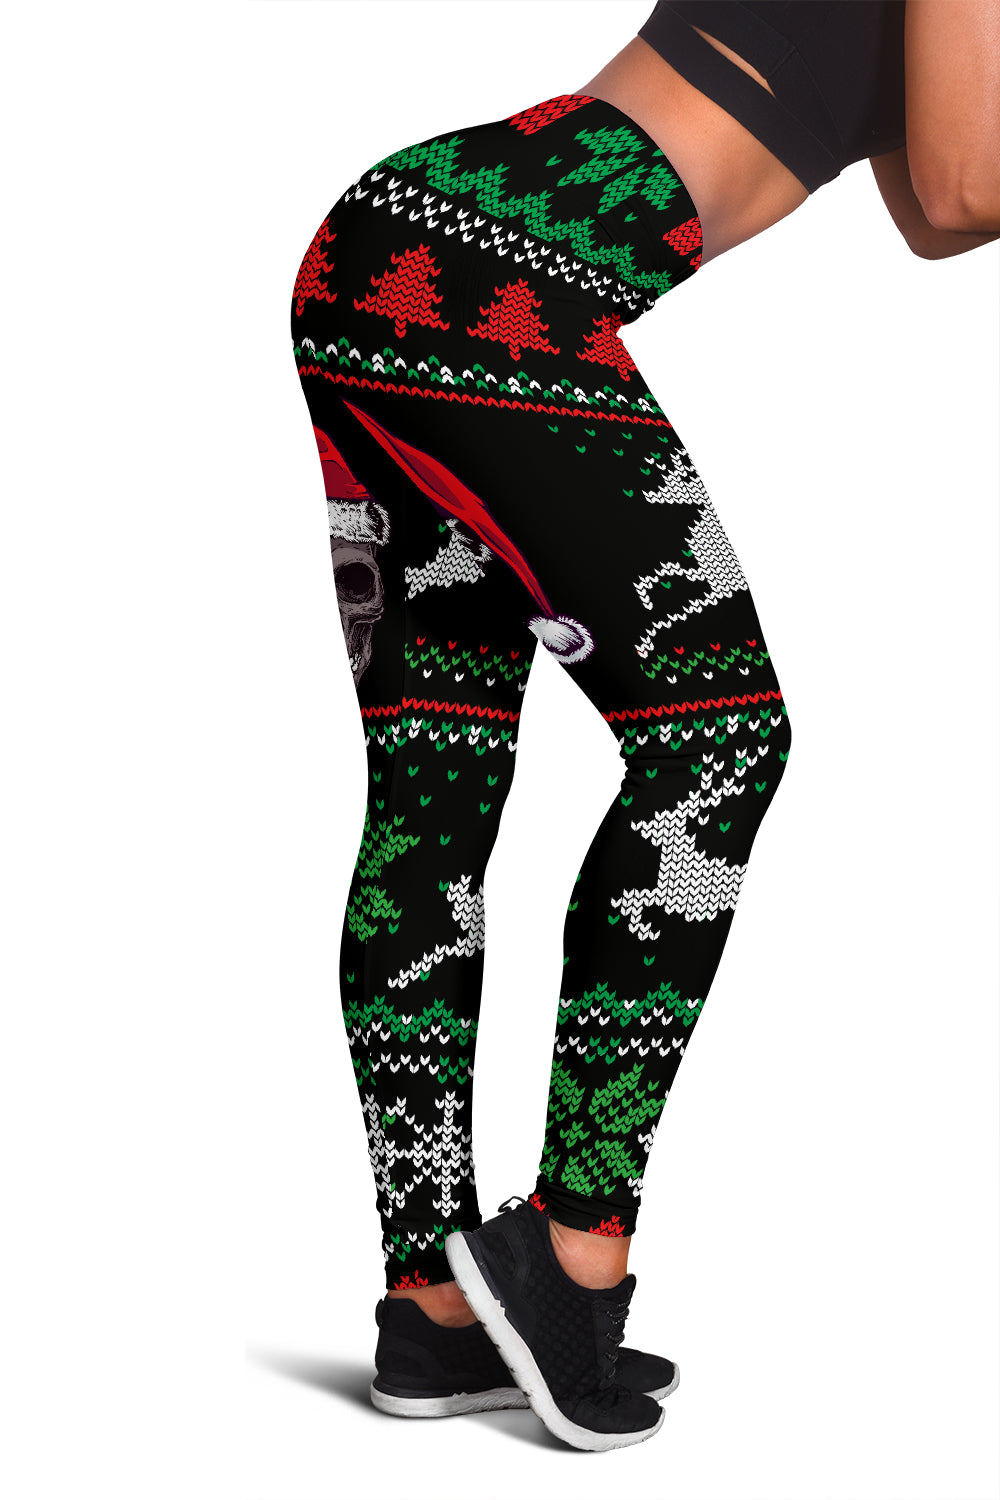 Christmas Leggings -  Womens Christmas Santa Skull Leggings